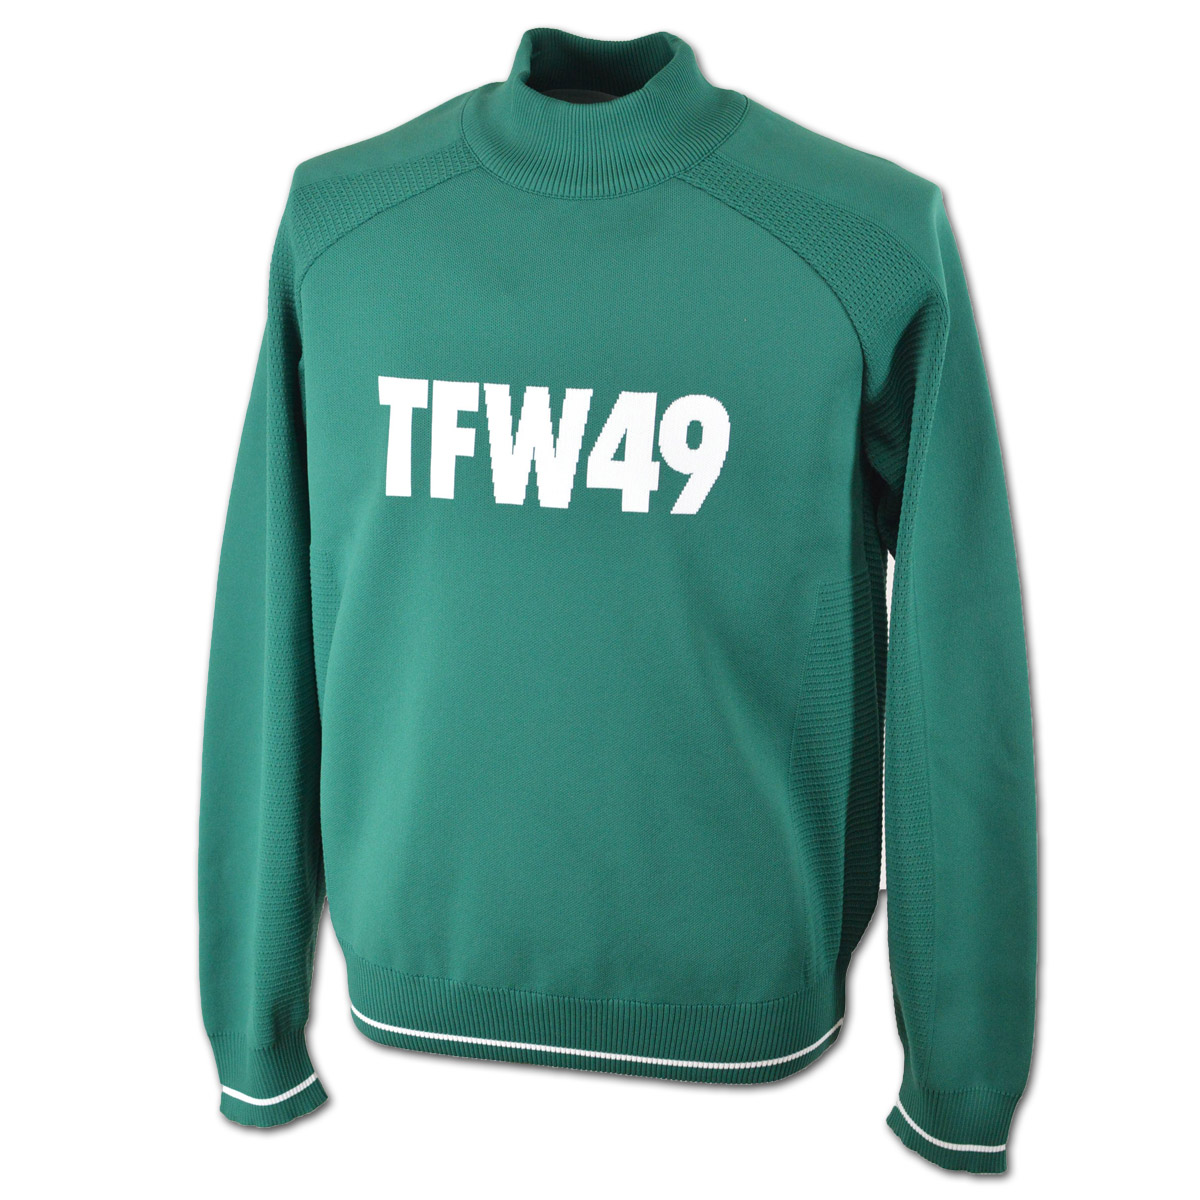 TFW49 ハイネックセーター メンズ 秋冬用 白 黒 グリーン M L LL t092320002